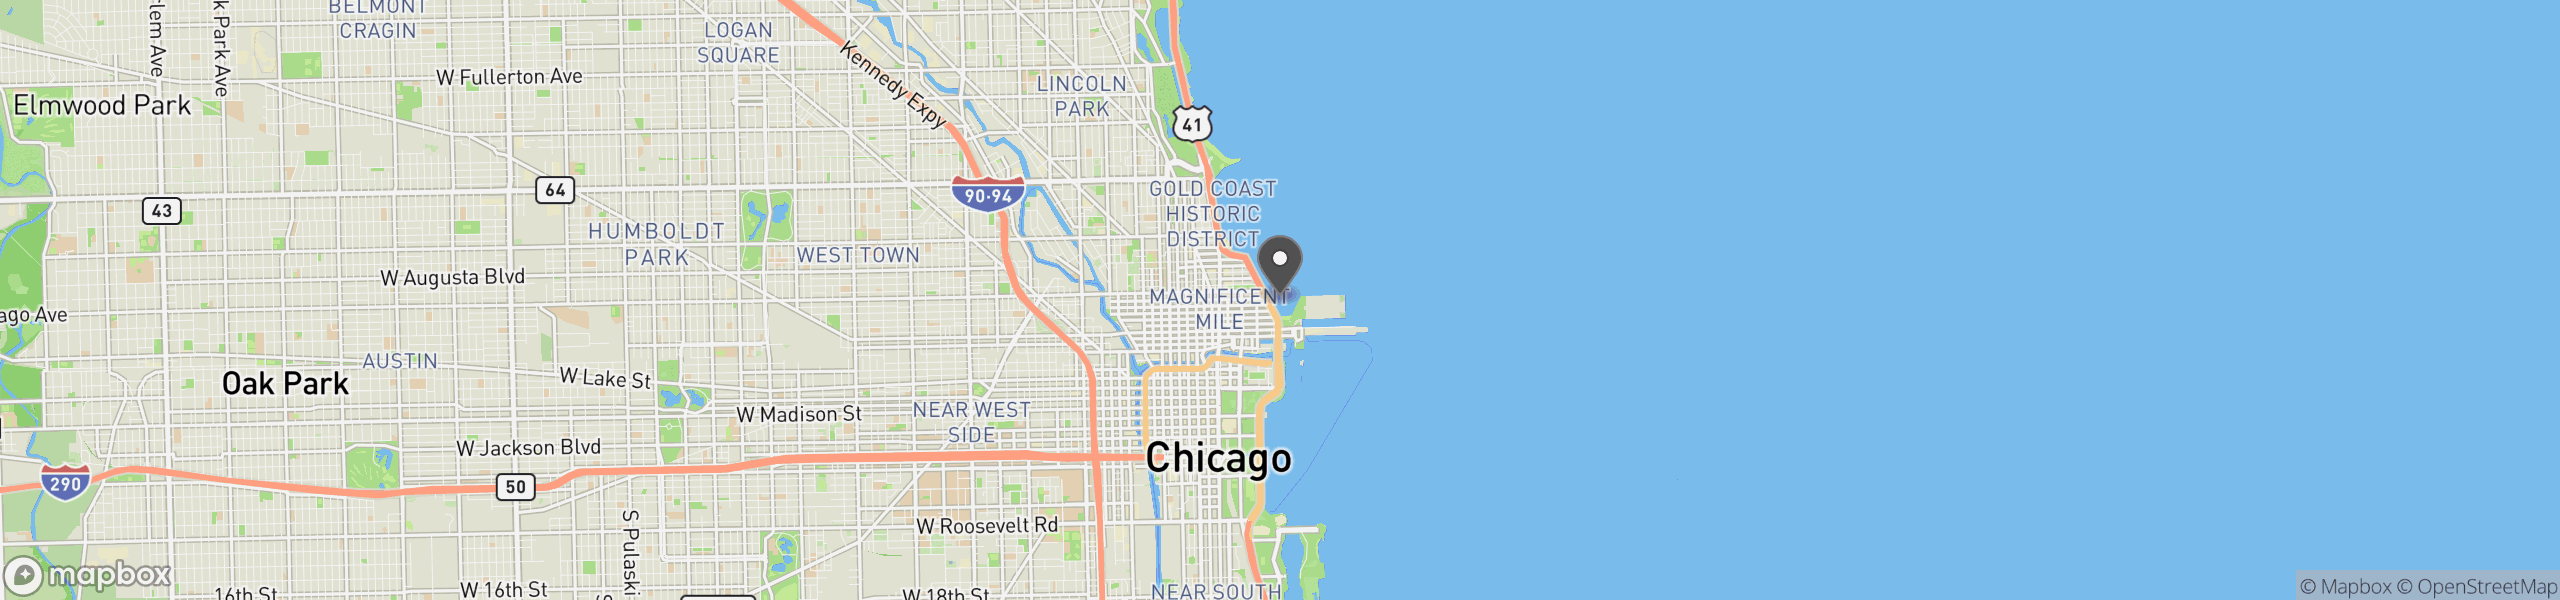 Chicago, IL 60611